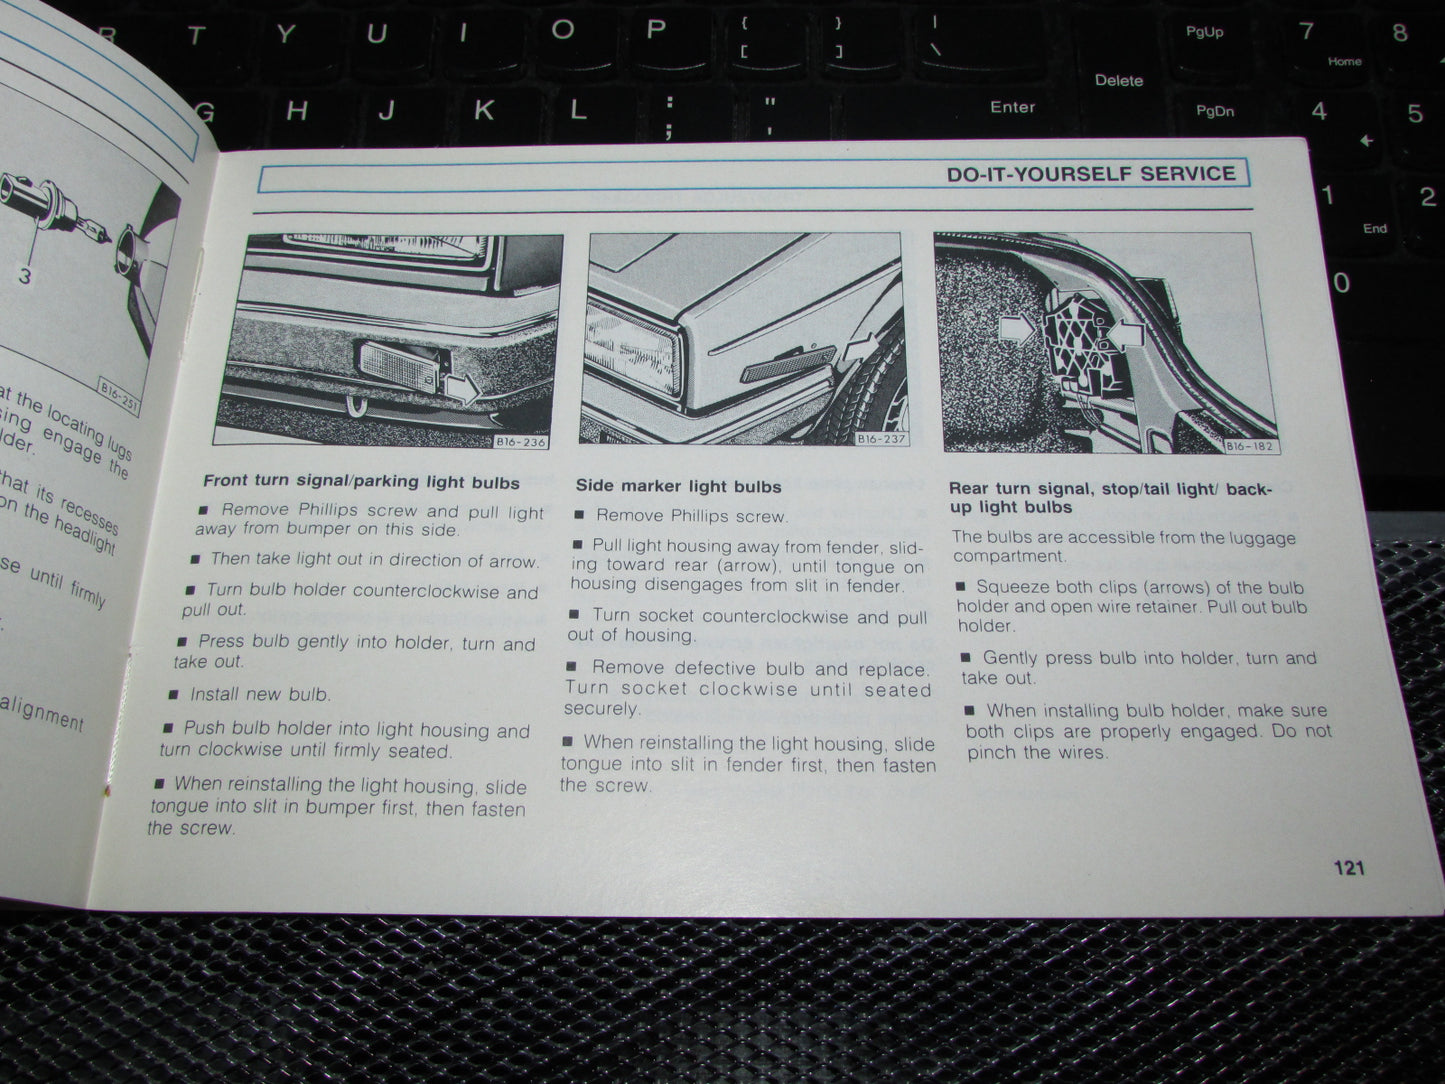 Volkswagen Jetta (1991) Owners Manual